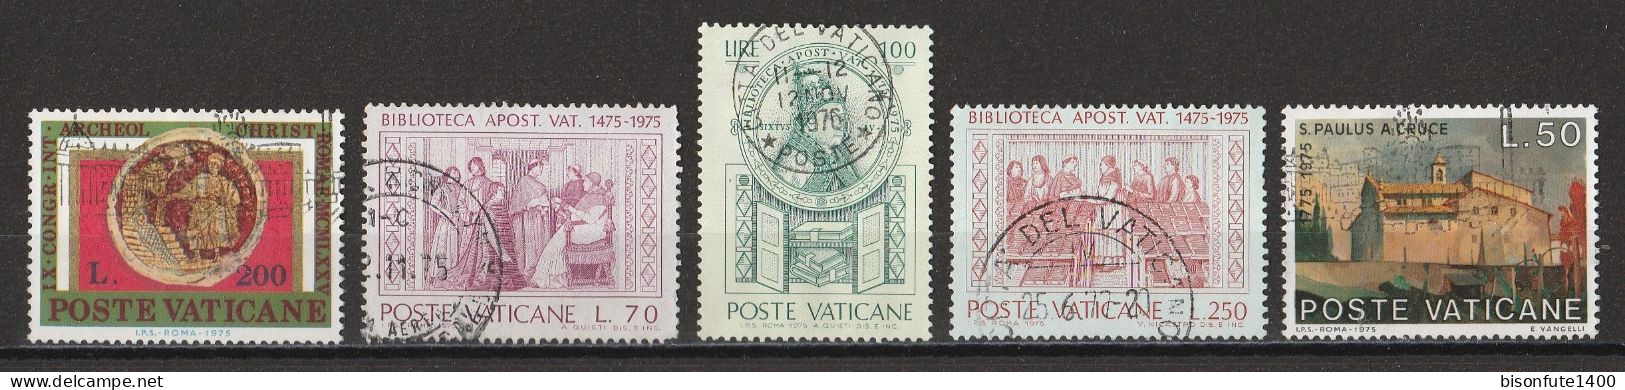 Vatican 1975 : Timbres Yvert & Tellier N° 593 - 596 - 600 - 601 - 602 - 603 - 604 - 605 - 606 - 607 - 608 - 609 Et... - Oblitérés